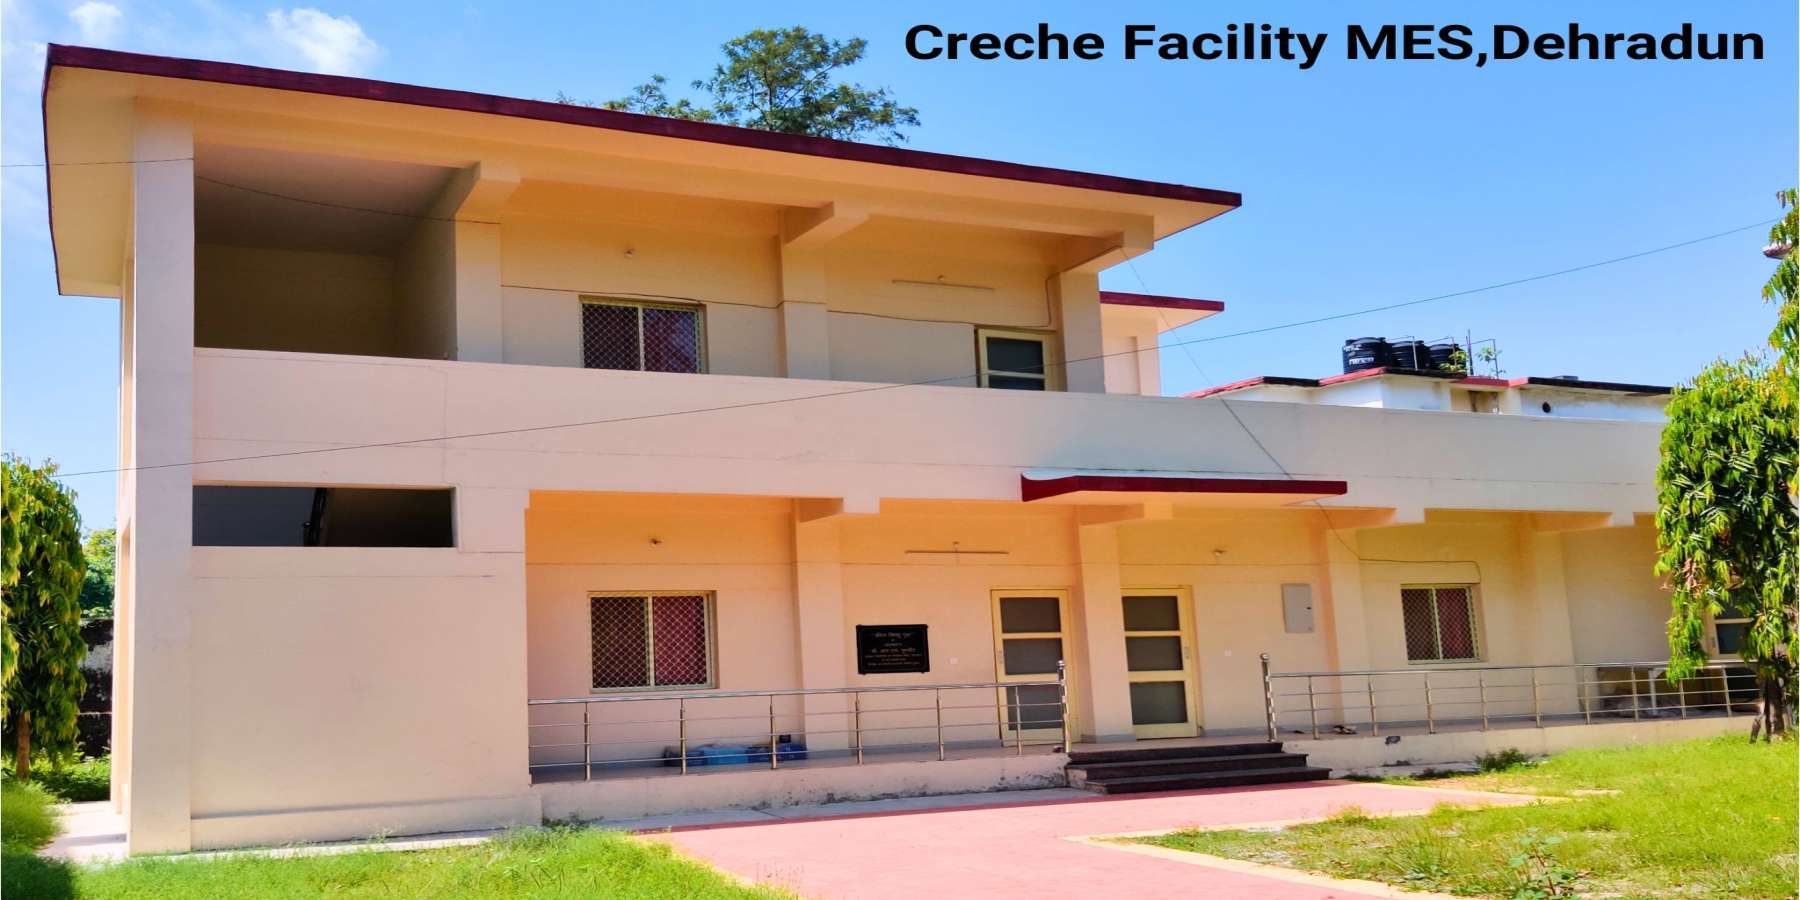 Cretche Facility MES,Dehradun (1) (2)